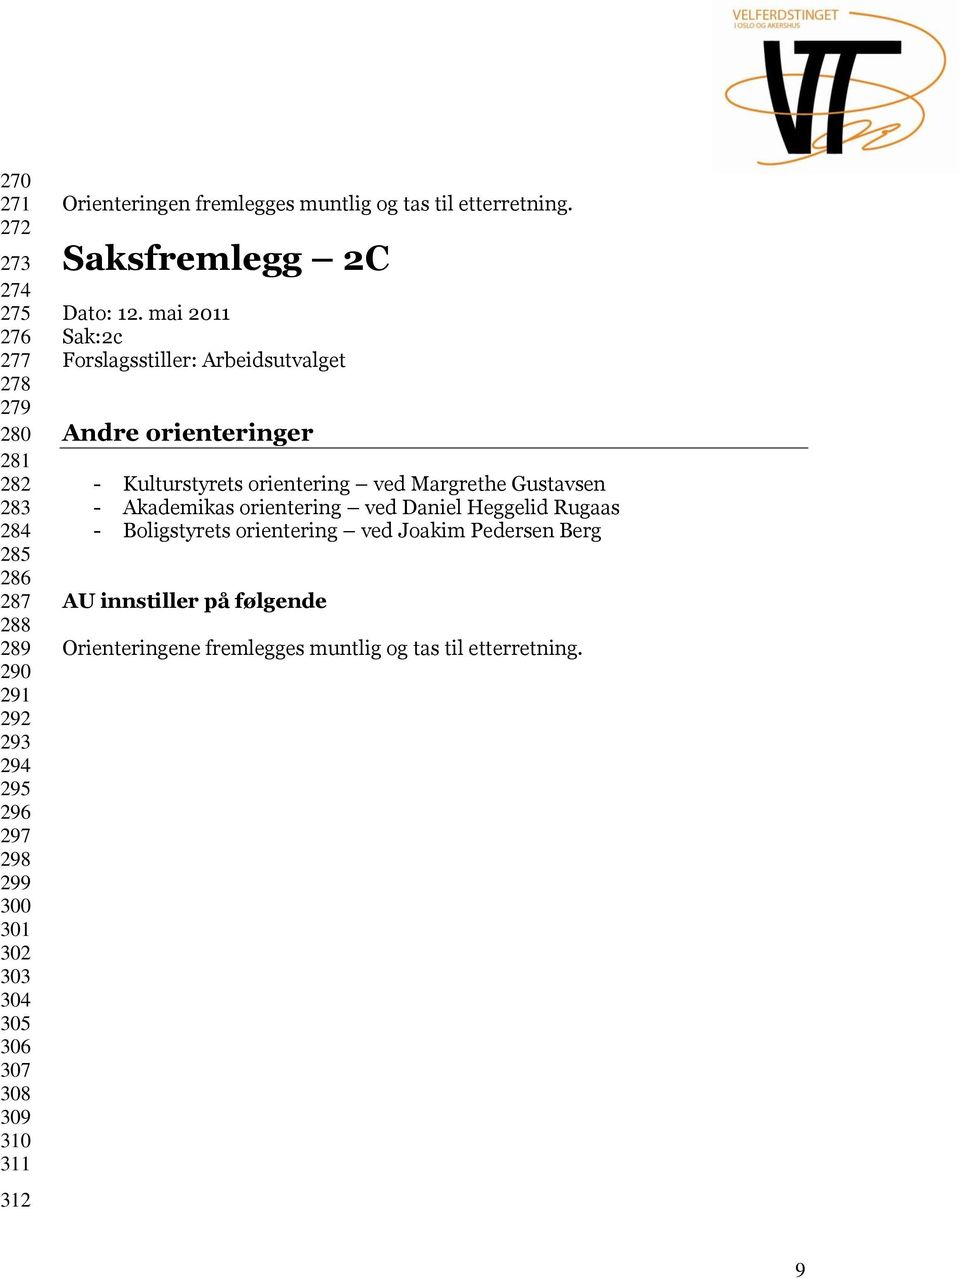 mai 2011 Sak:2c Andre orienteringer - Kulturstyrets orientering ved Margrethe Gustavsen - Akademikas orientering ved Daniel Heggelid